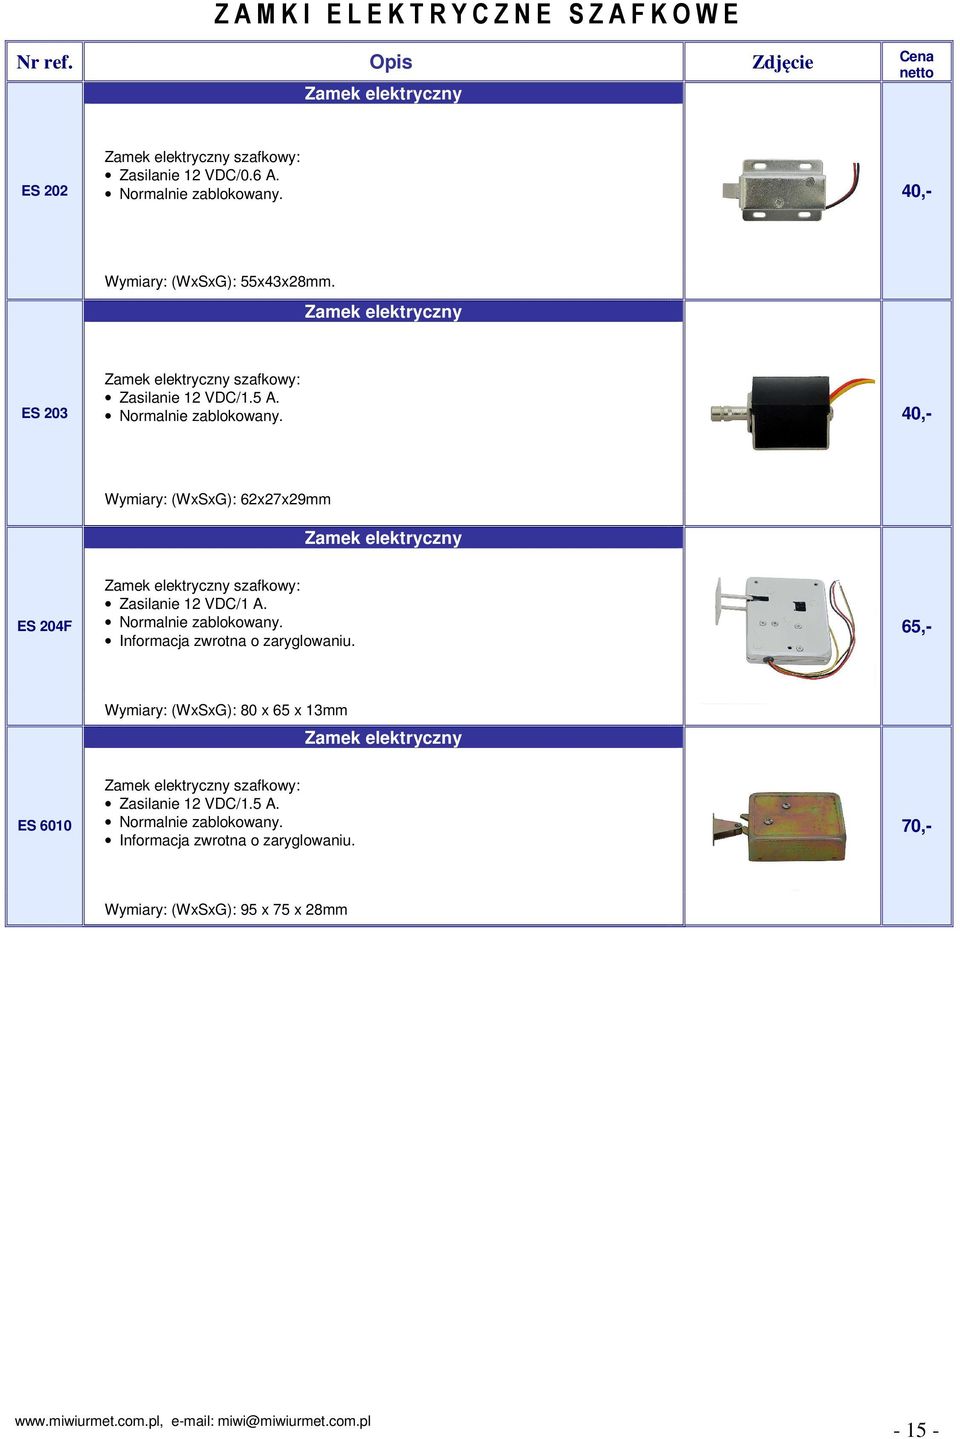 40,- Wymiary: (WxSxG): 62x27x29mm Zamek elektryczny ES 204F Zamek elektryczny szafkowy: Zasilanie 12 VDC/1 A. Normalnie zablokowany. Informacja zwrotna o zaryglowaniu.